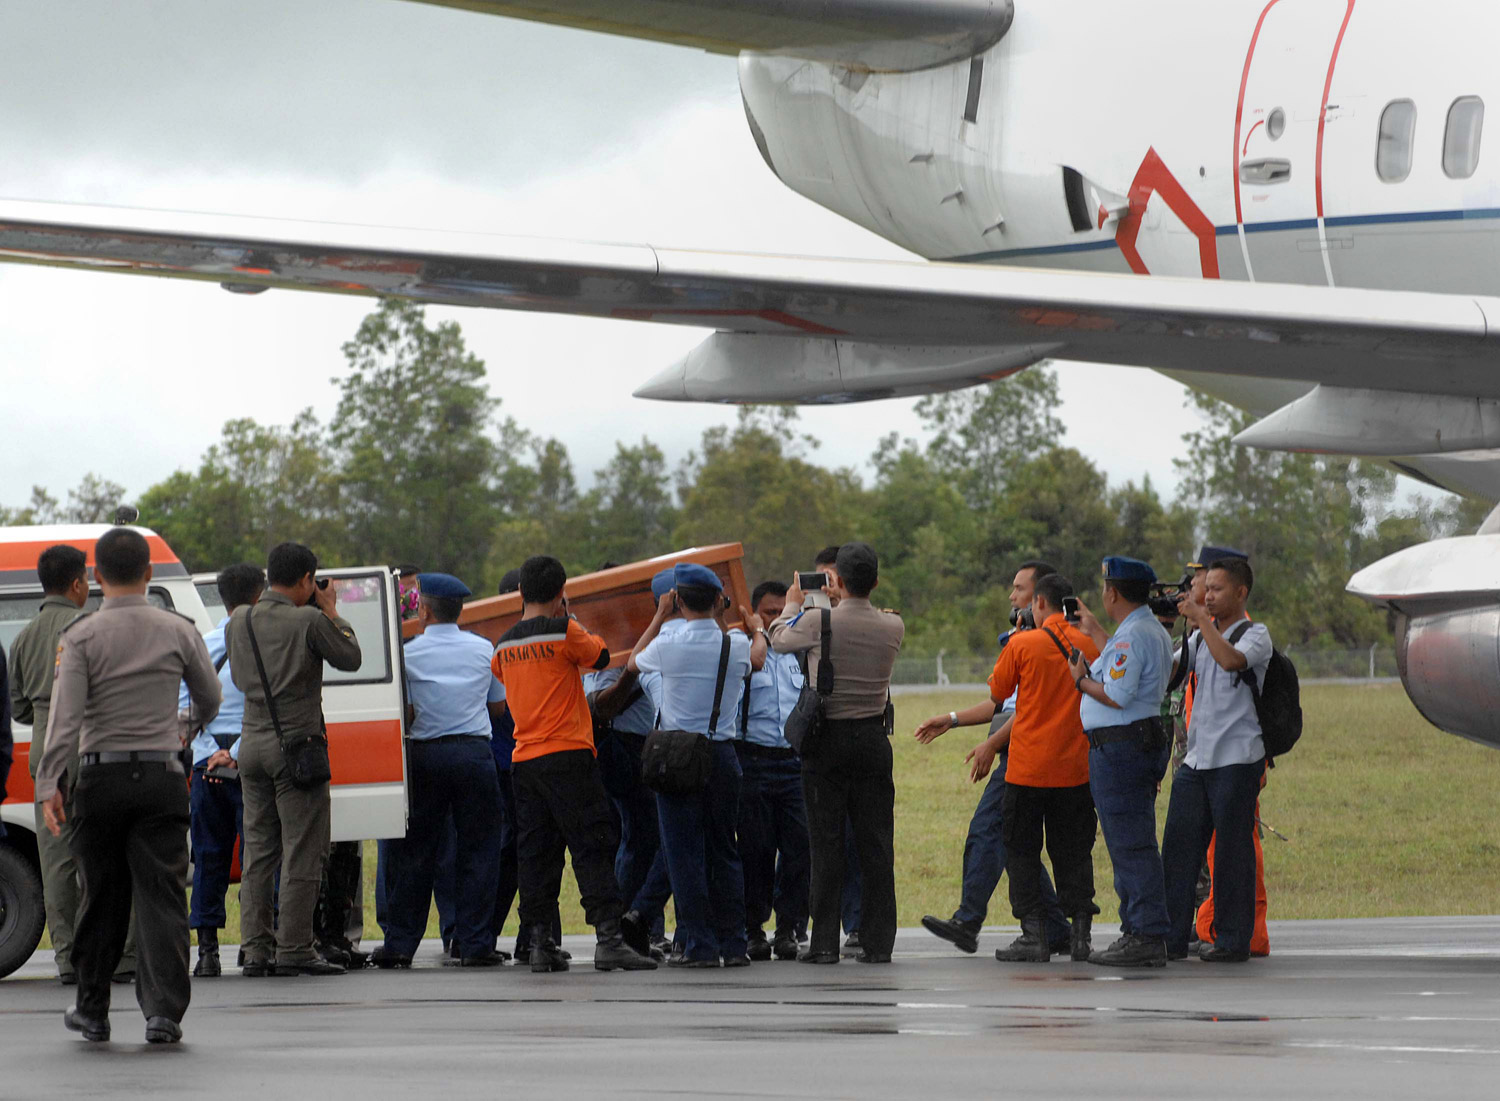 Ninguno de los cuerpos recuperados del AirAsia llevaba chaleco salvavidas, según funcionario